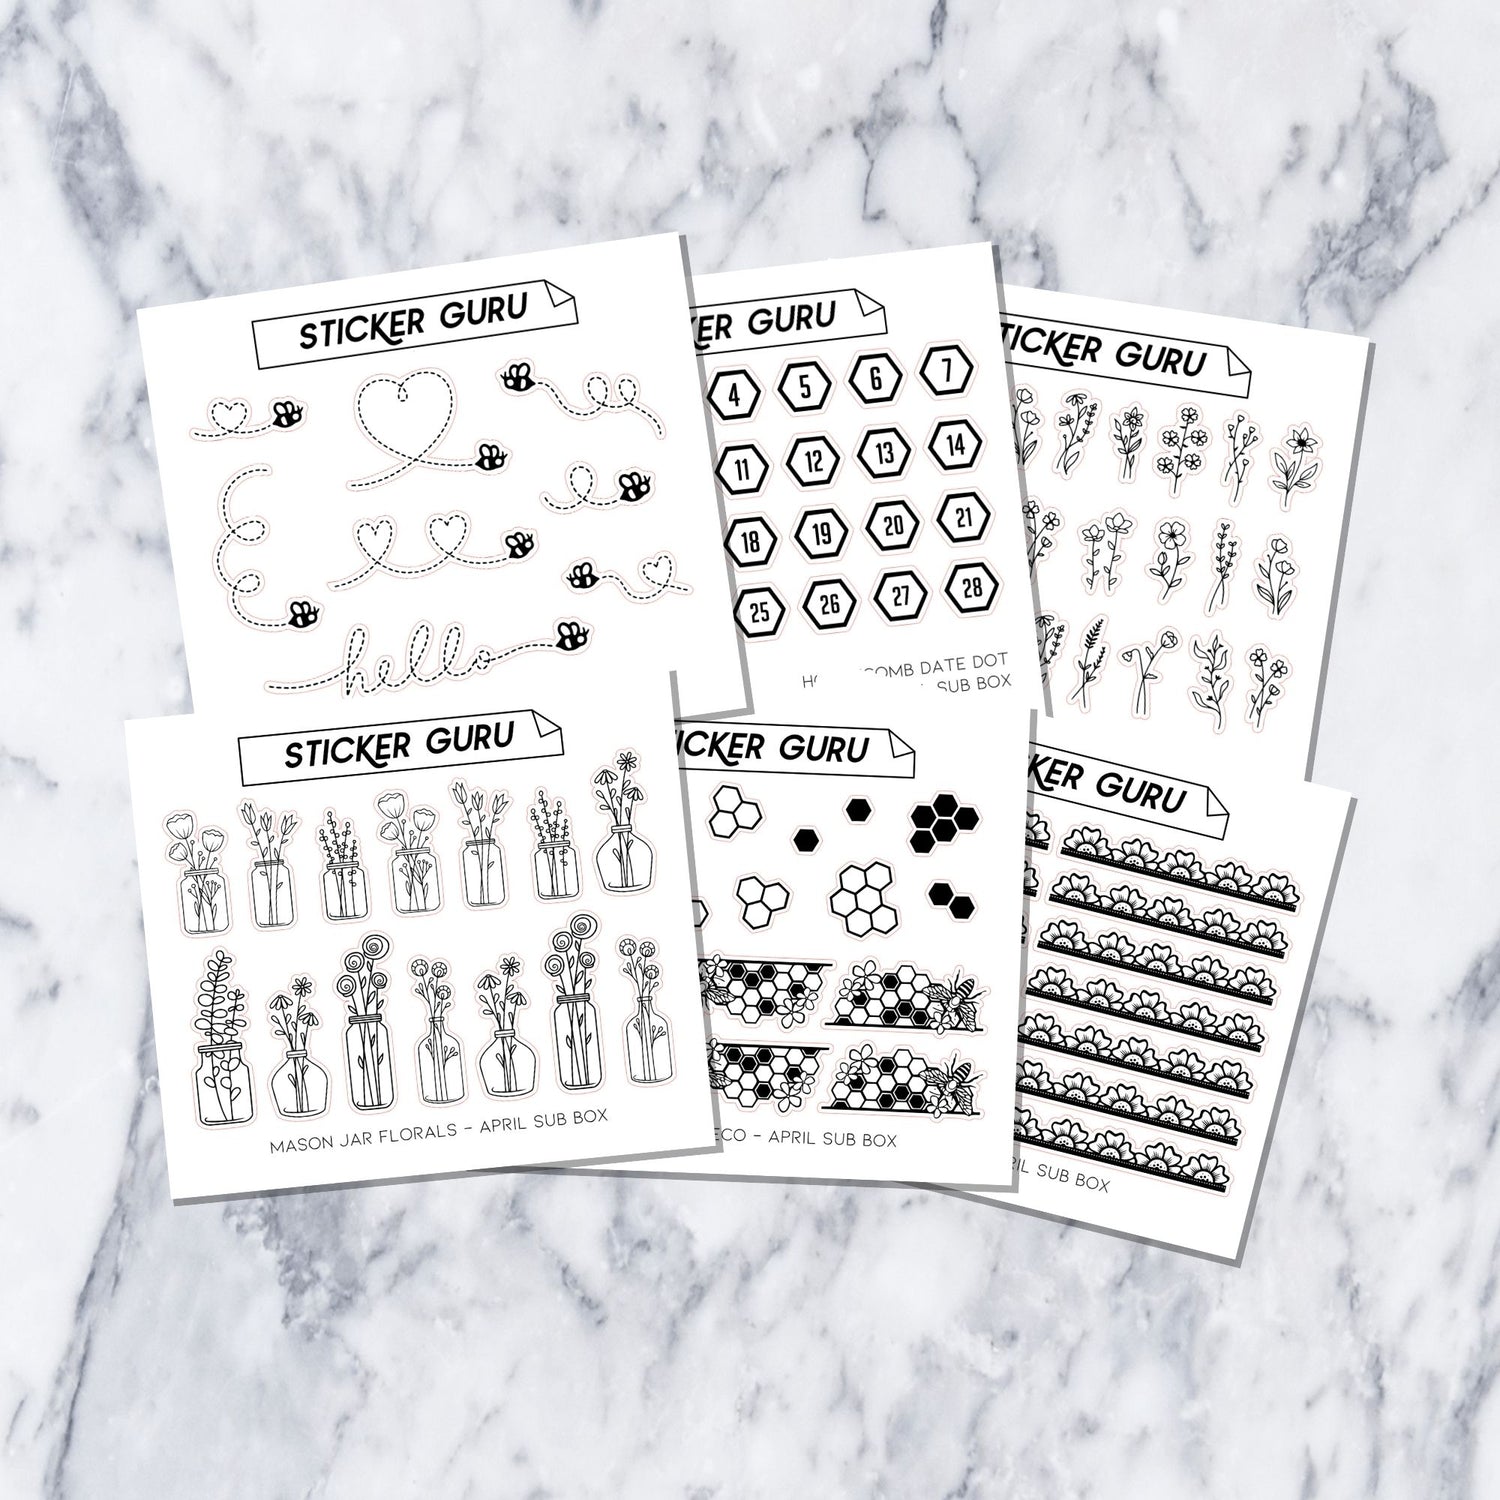 Honey Foil • 6 designs – Sticker Guru